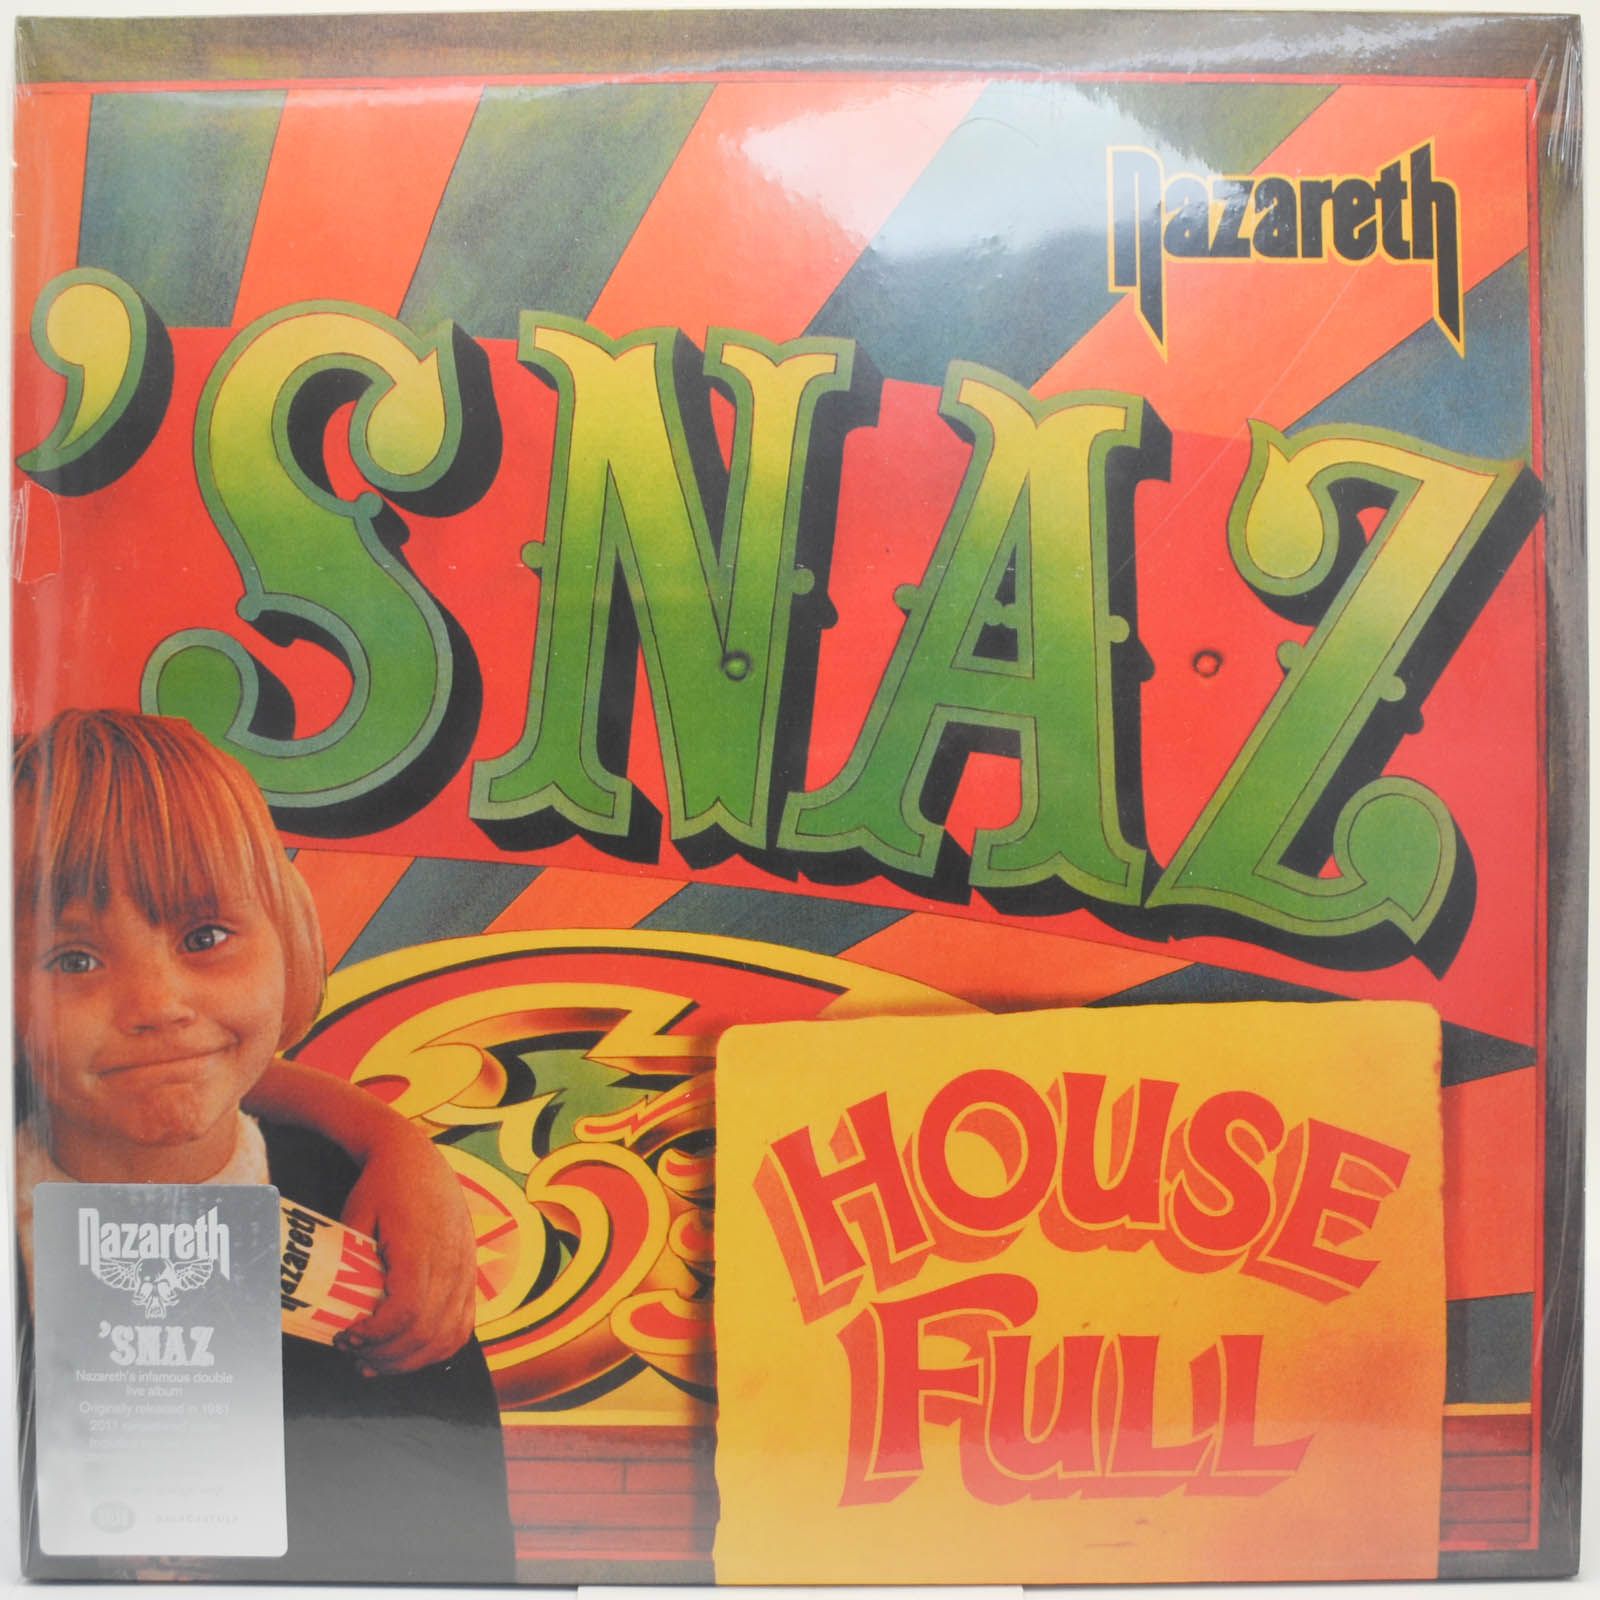 Nazareth — Snaz (2LP), 1994